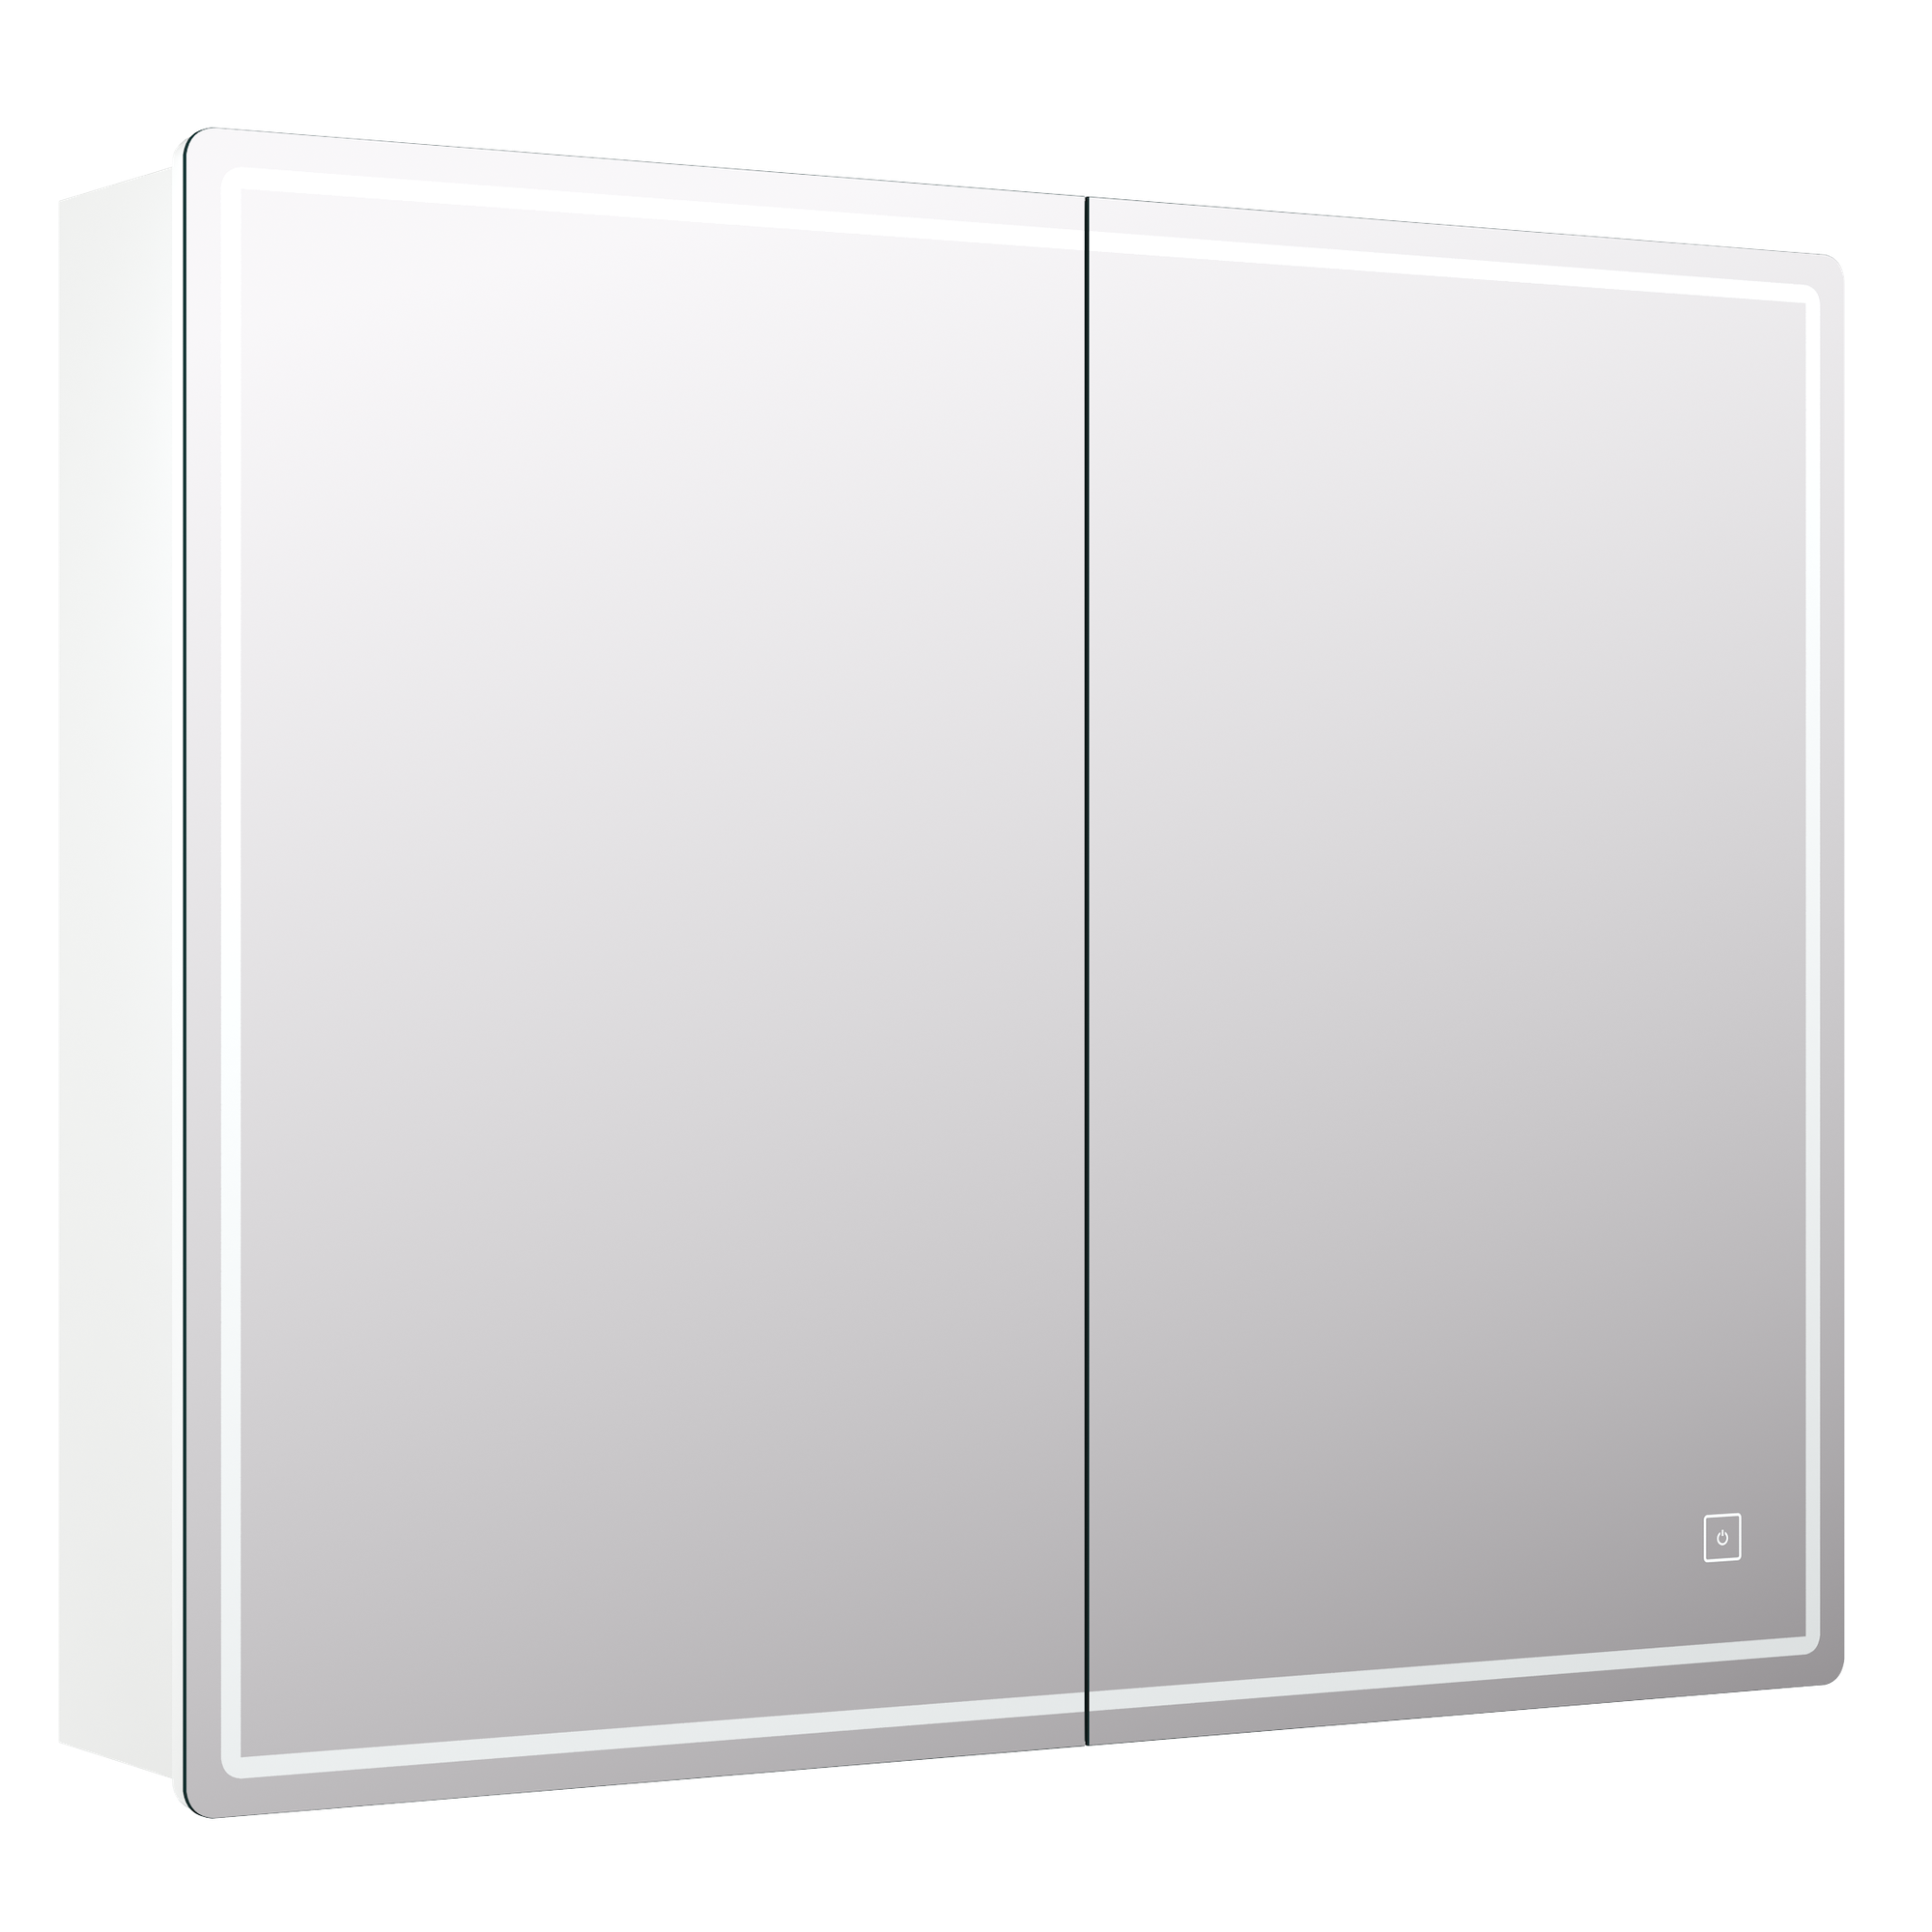 Шкаф зеркальный подвесной Look с подсветкой 80х80 см цвет белый